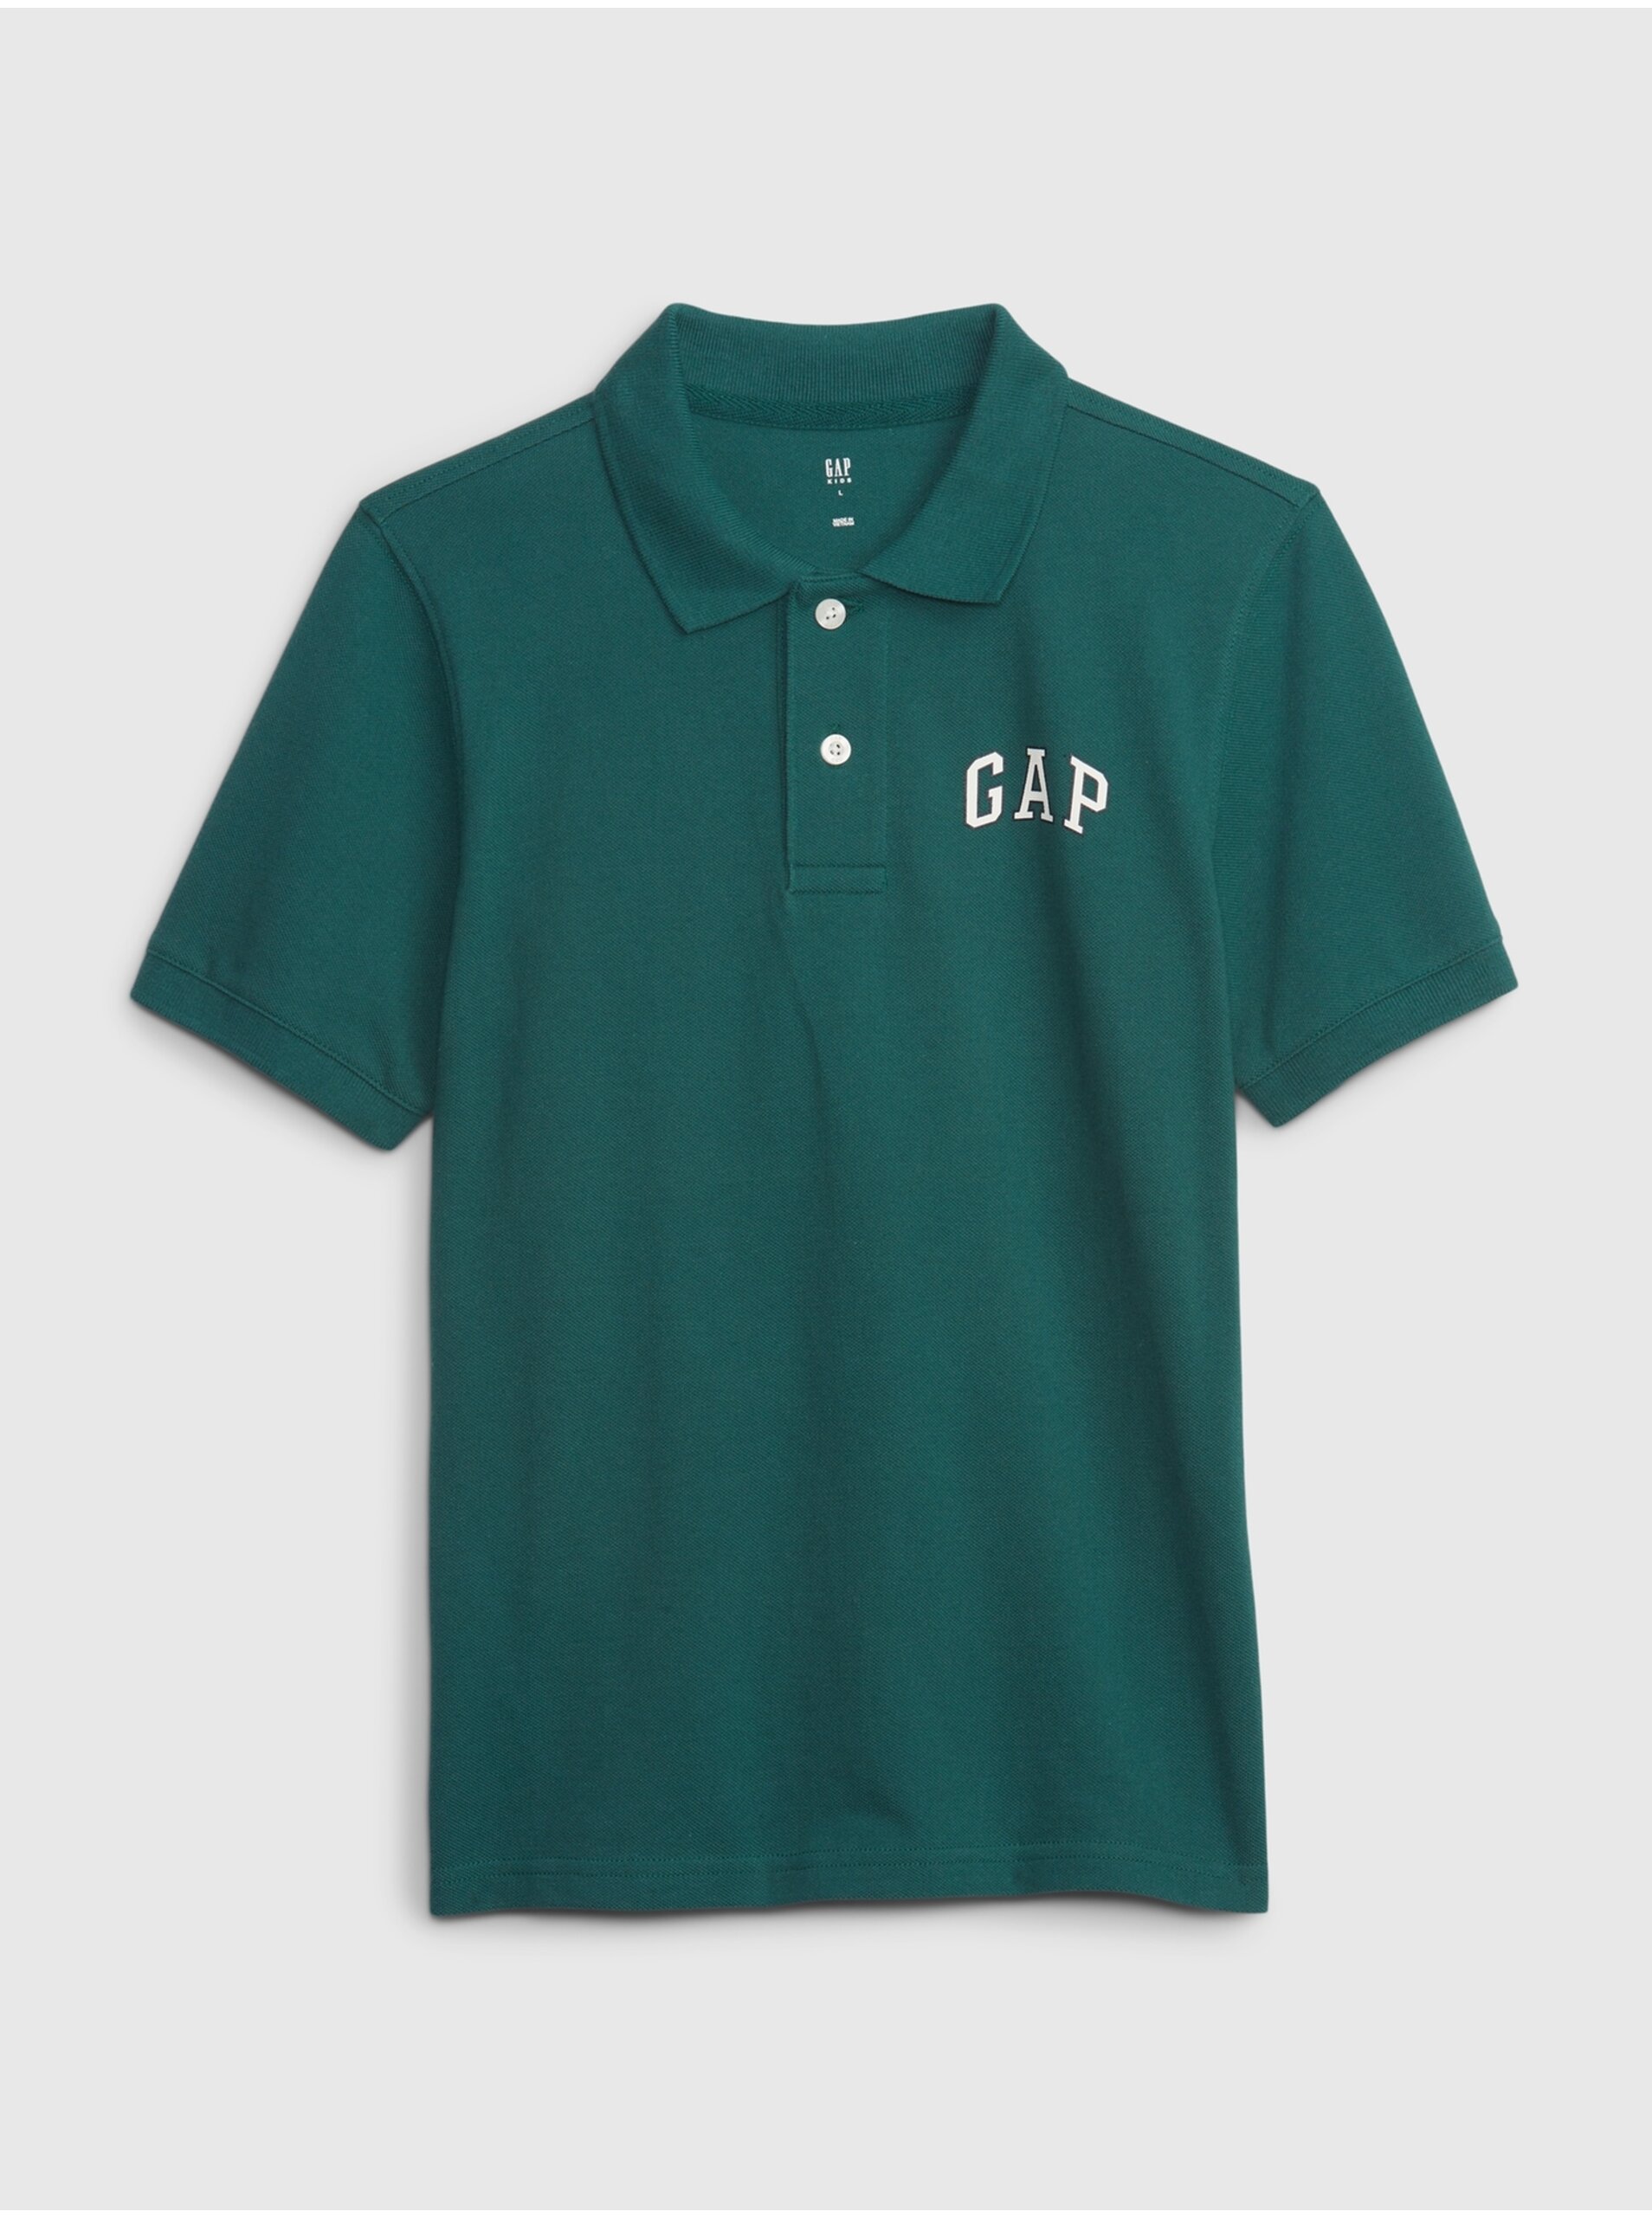 Lacno Petrolejové chlapčenské polo tričko s logom GAP